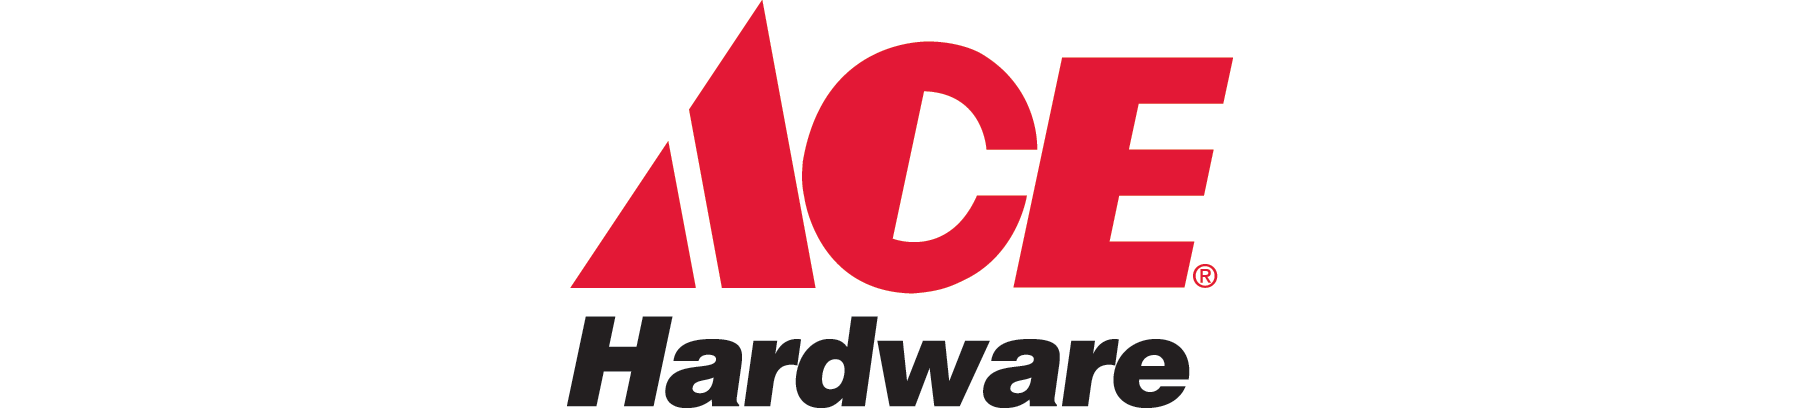  Ace hardware  Logos